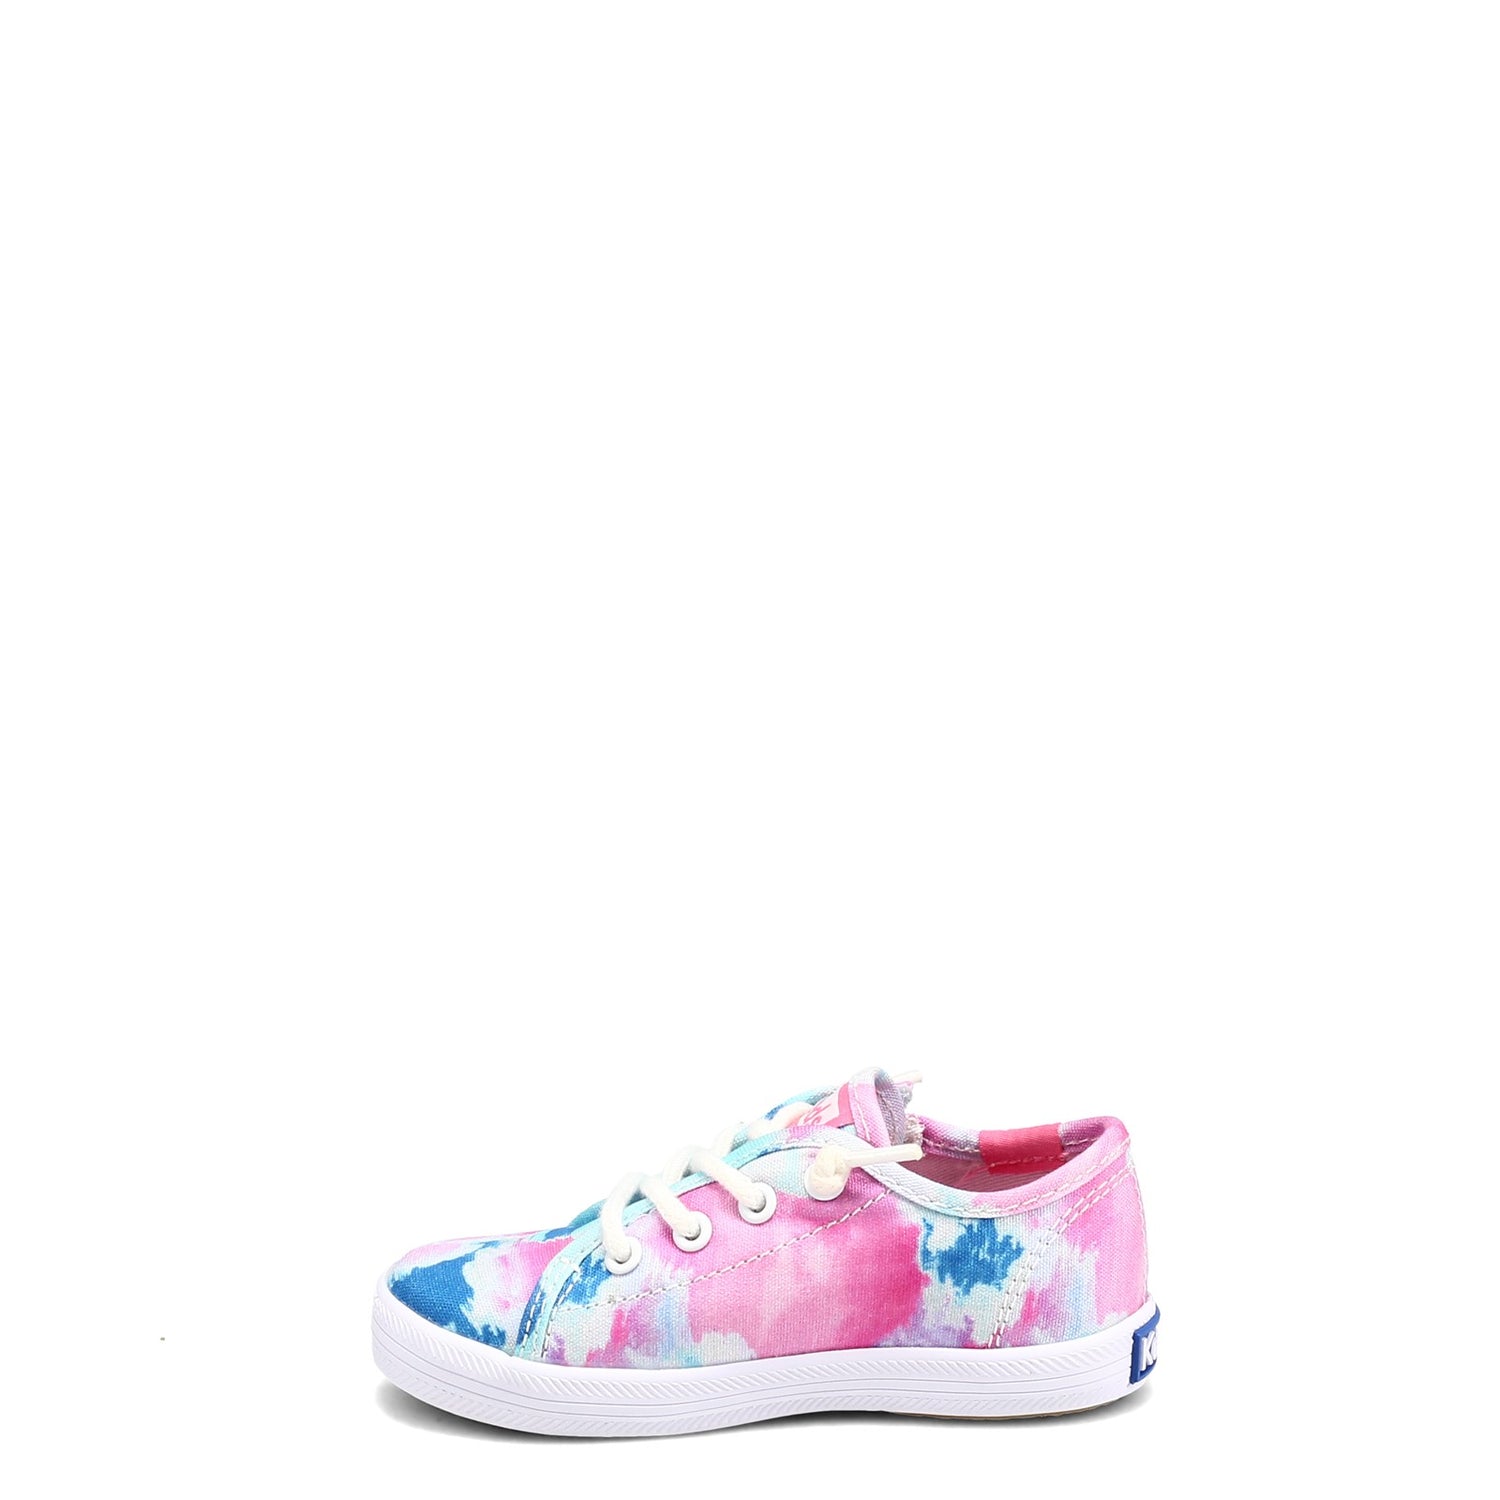 Peltz Shoes  Girl's Keds Kickstart Sneaker - Toddler & Little Kid BLUE MULTI KL163957